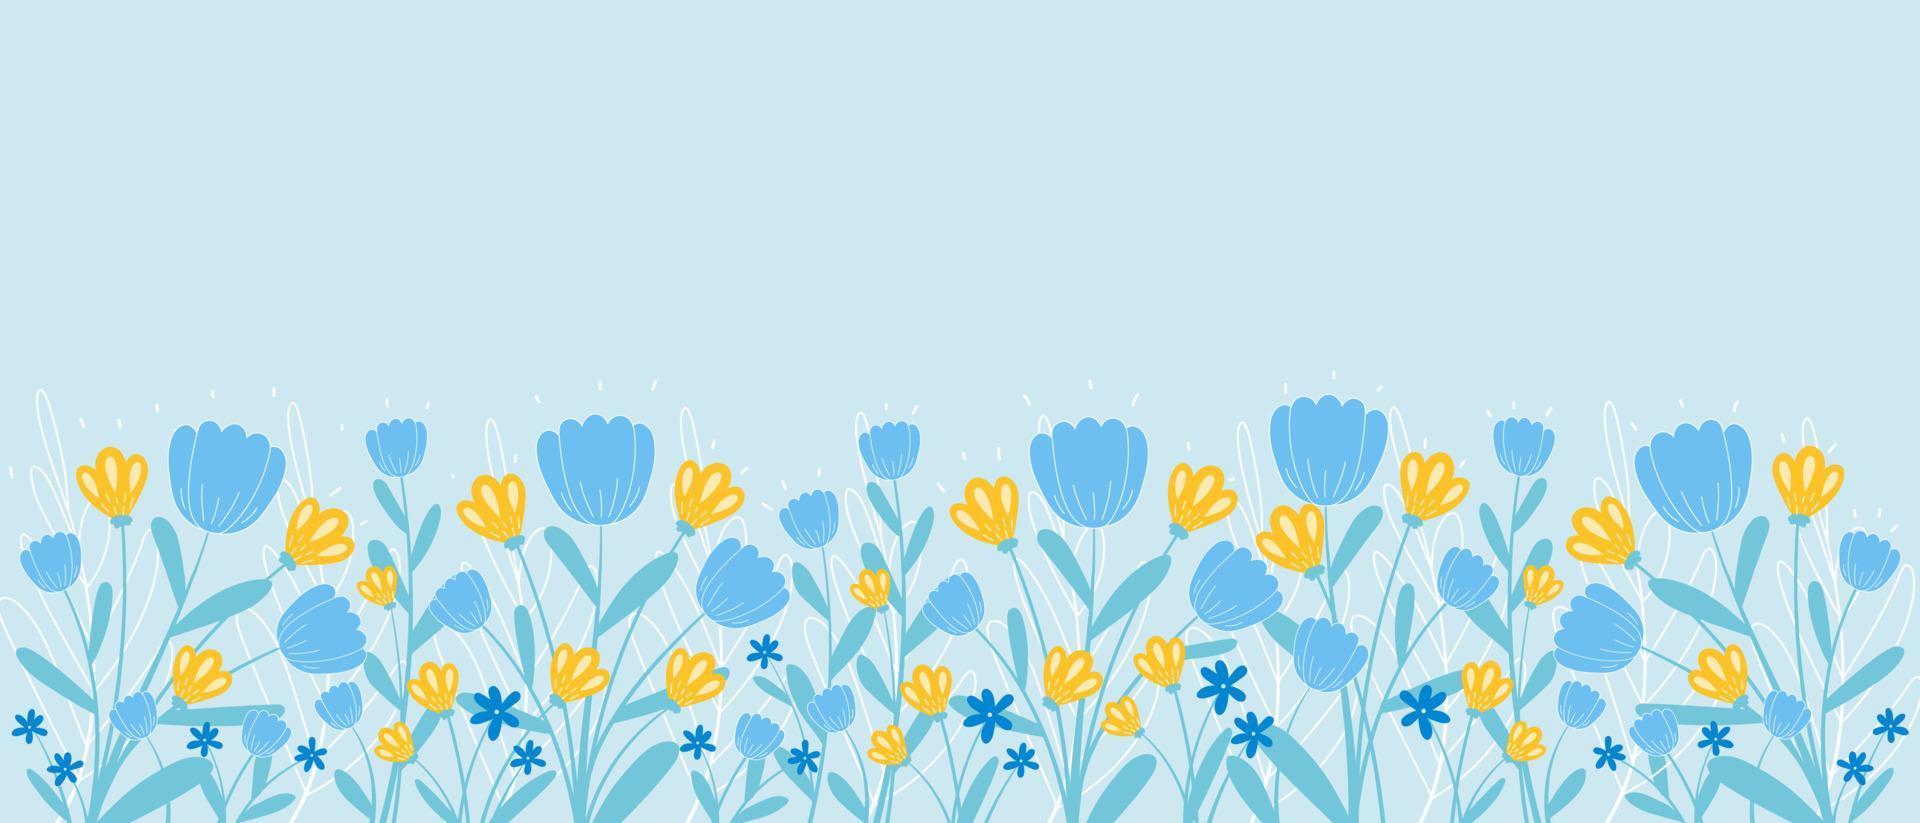 cenário de primavera com borda de flores desabrochando e folhas em estilo desenhado à mão, modelo de banner horizontal vetor